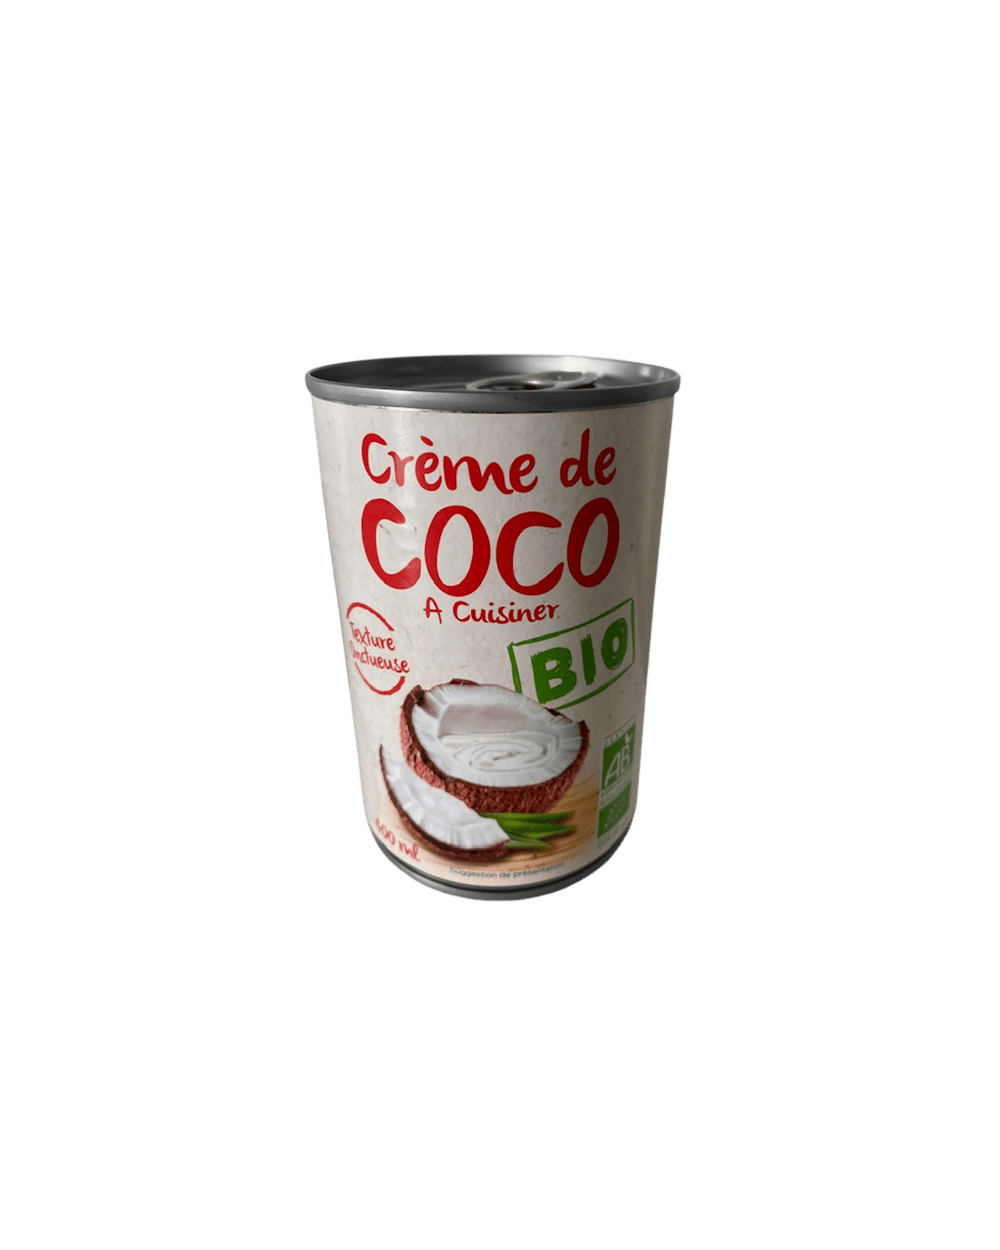 Crème de coco BIO, pour une cuisine saine, bio et exotique